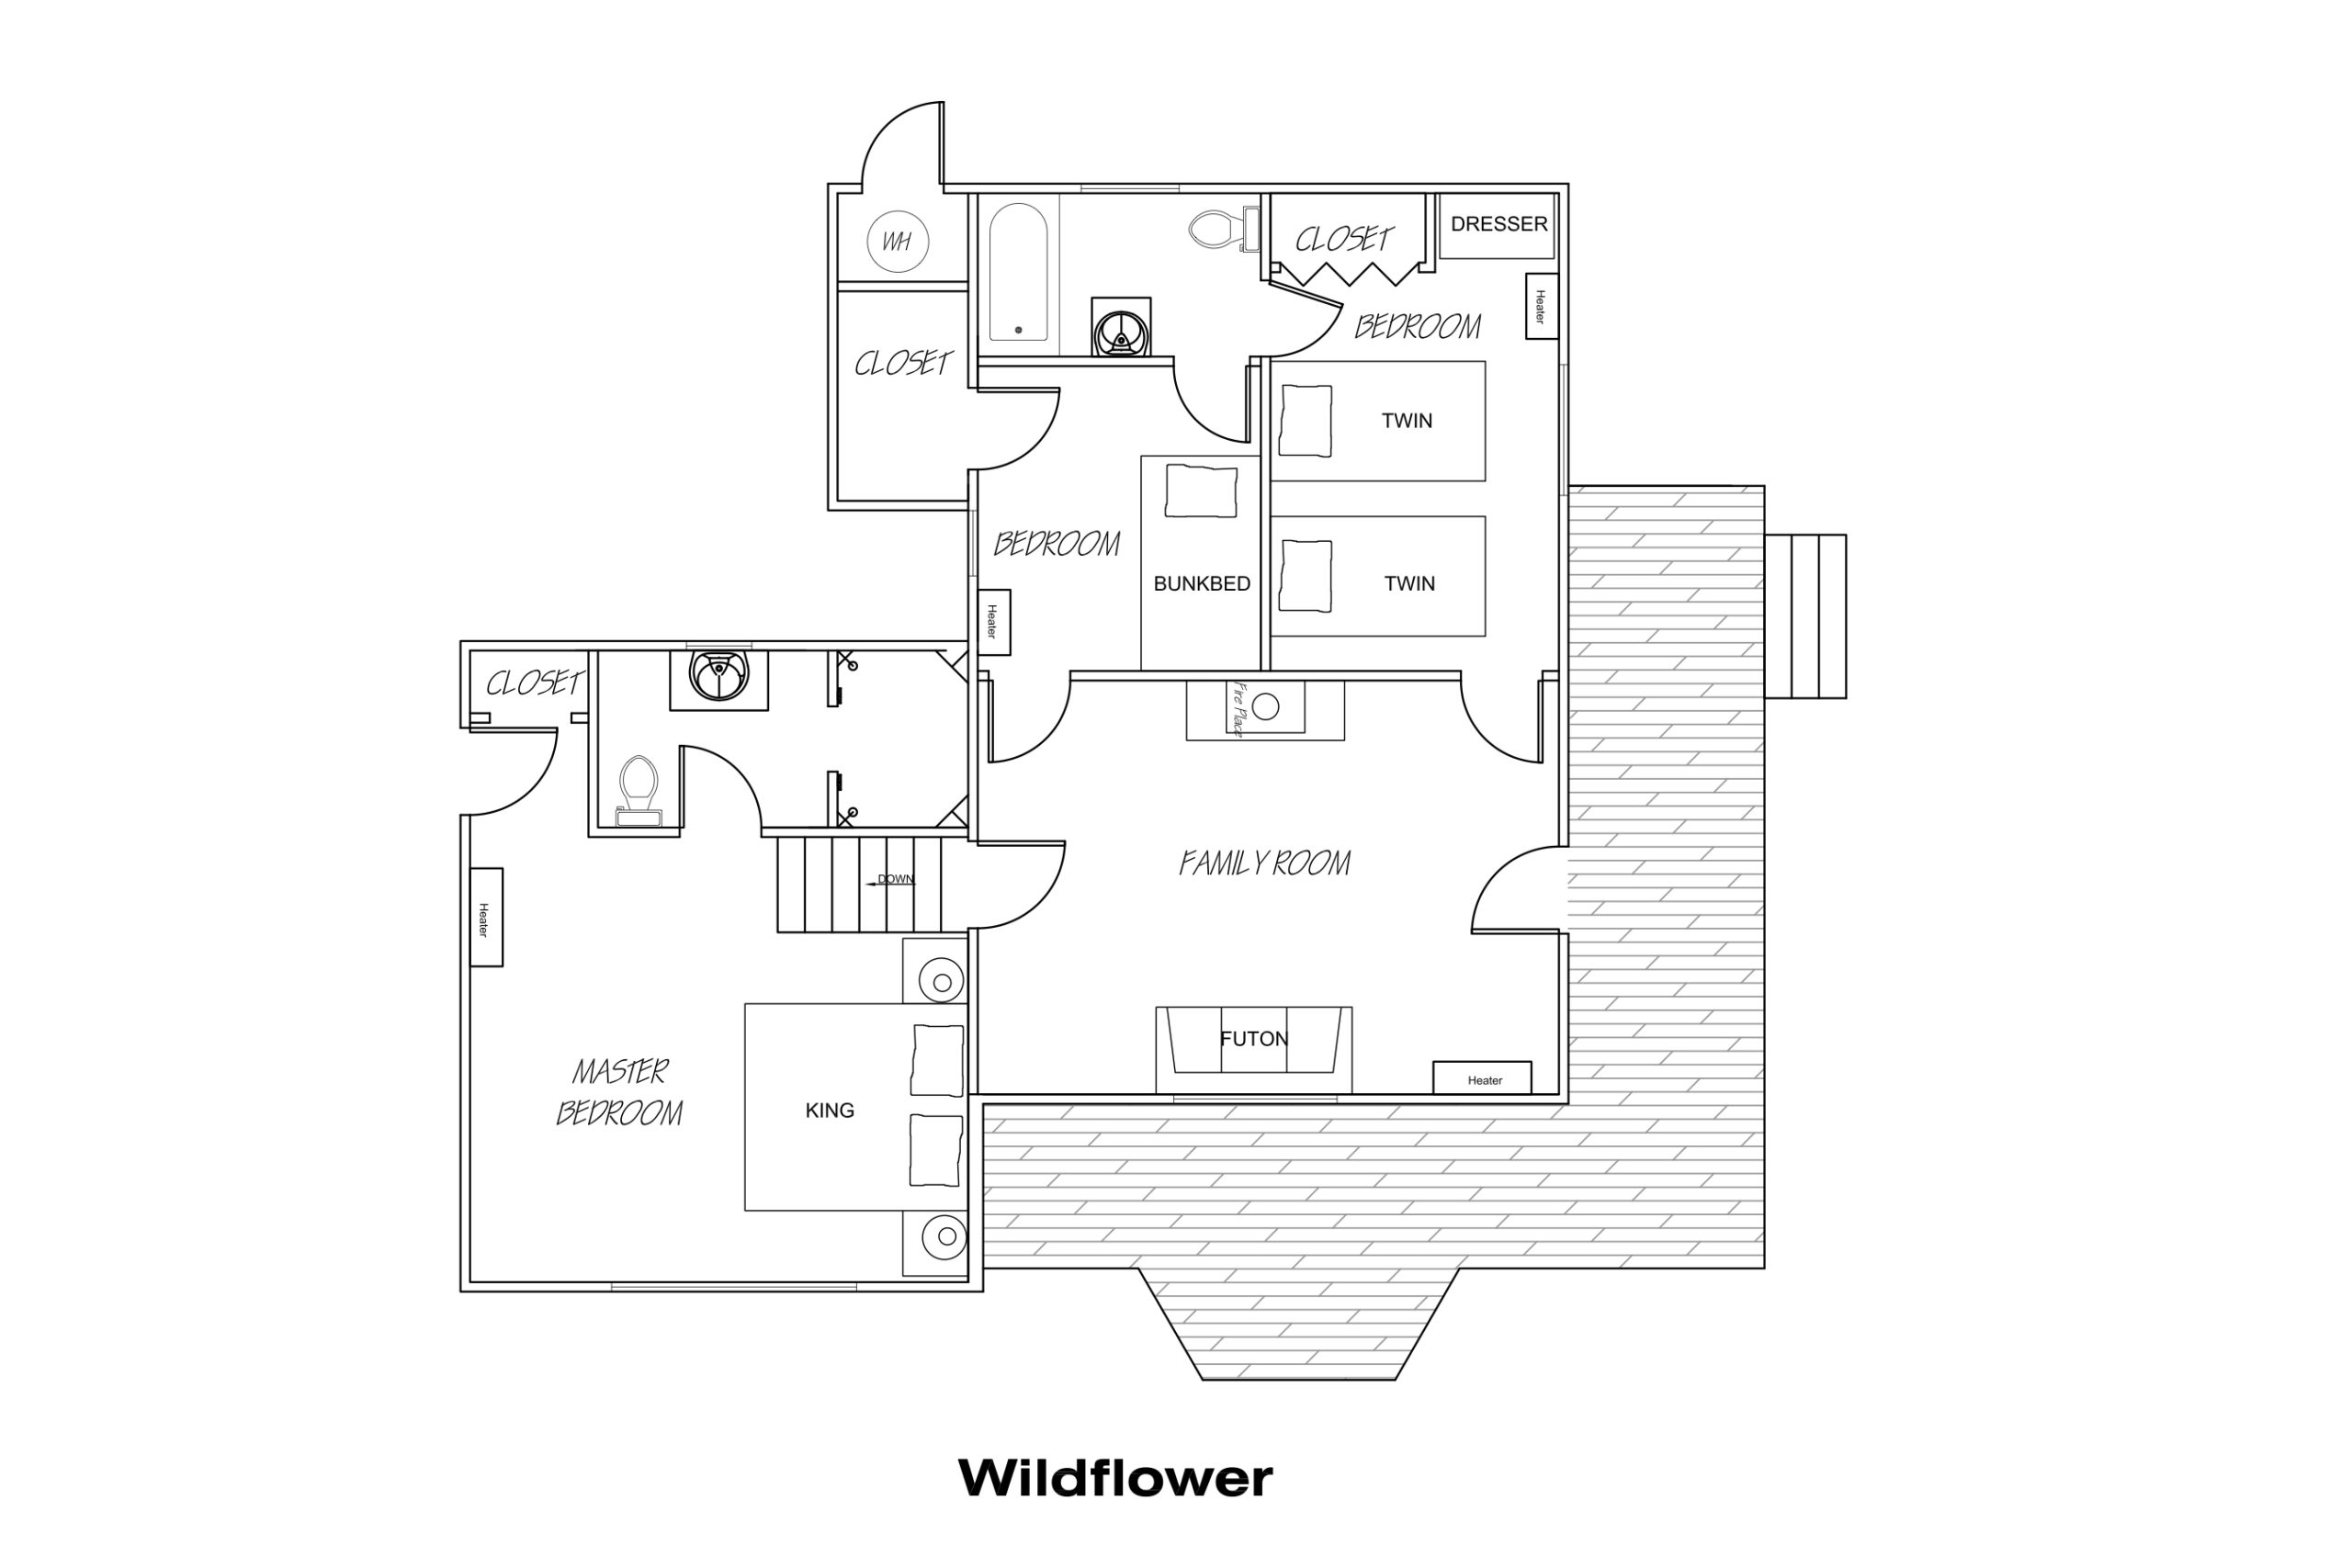 Wildflower cabin floorplan